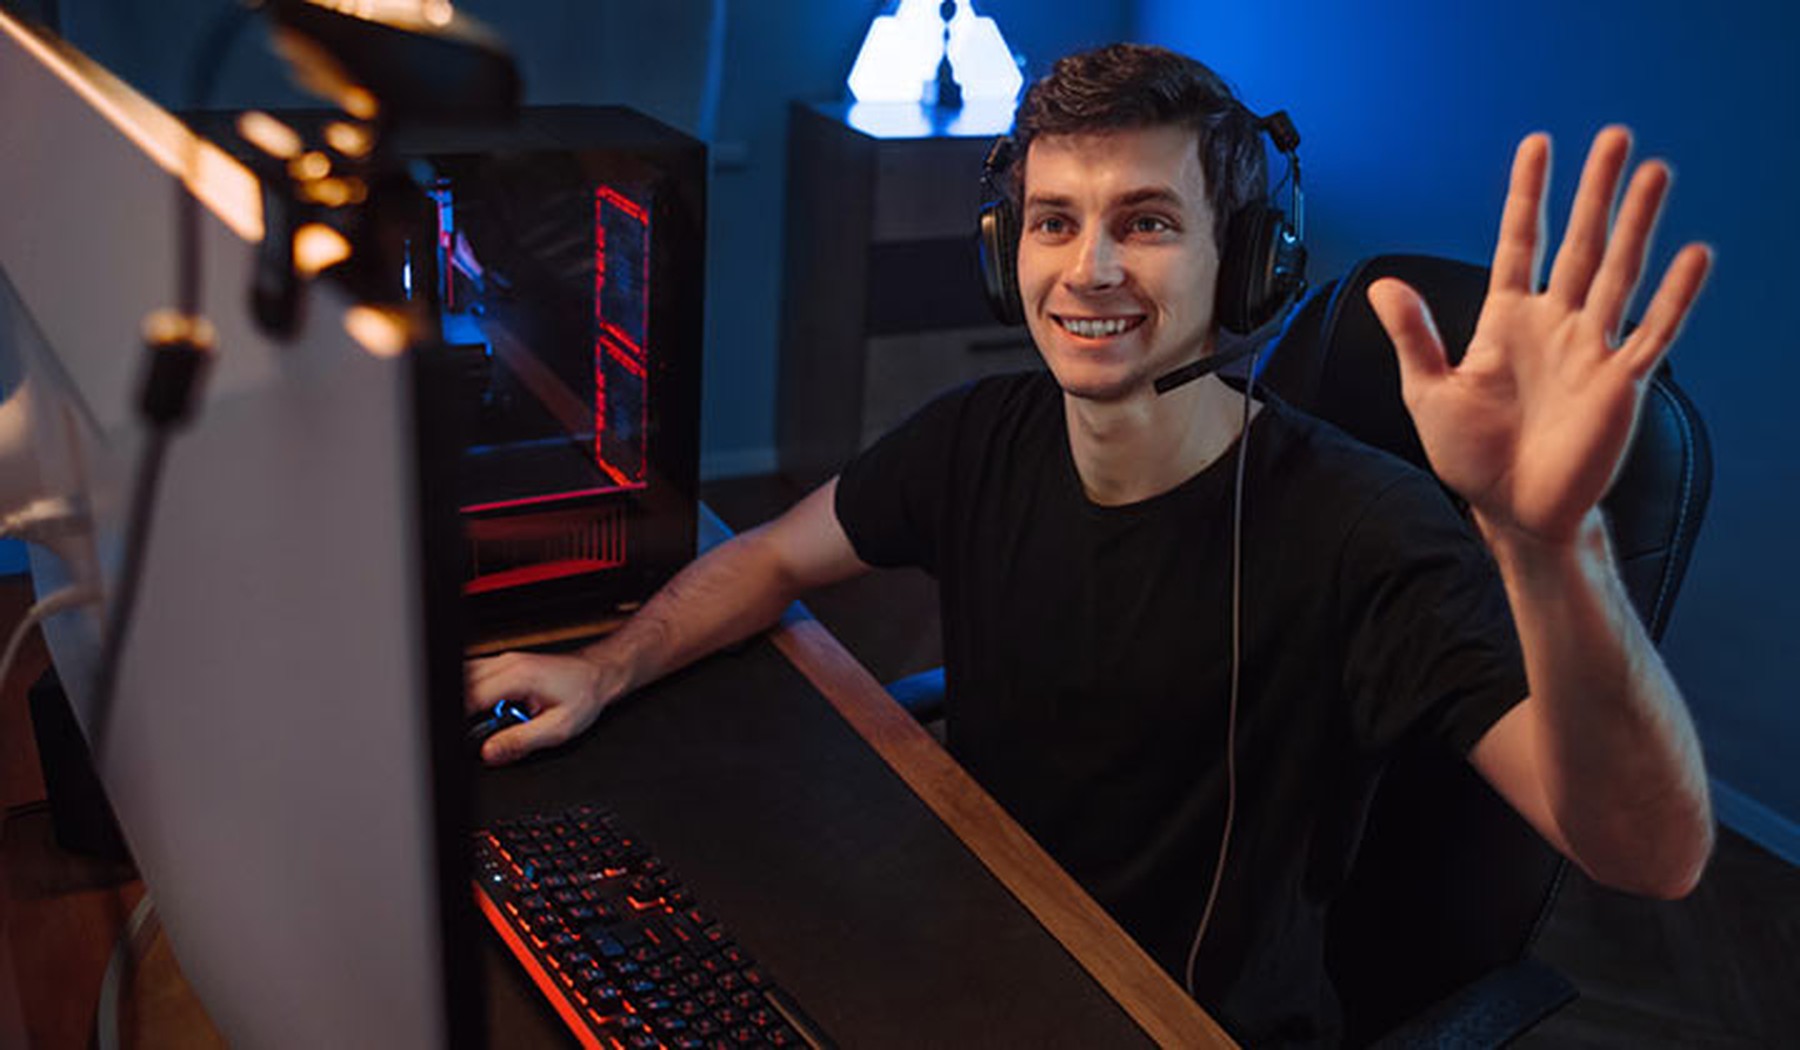 Chico joven sentado frente al ordenador y saludando a una webcam. Lleva unos cascos de gamer y está sentado en una silla de escritorio negra.